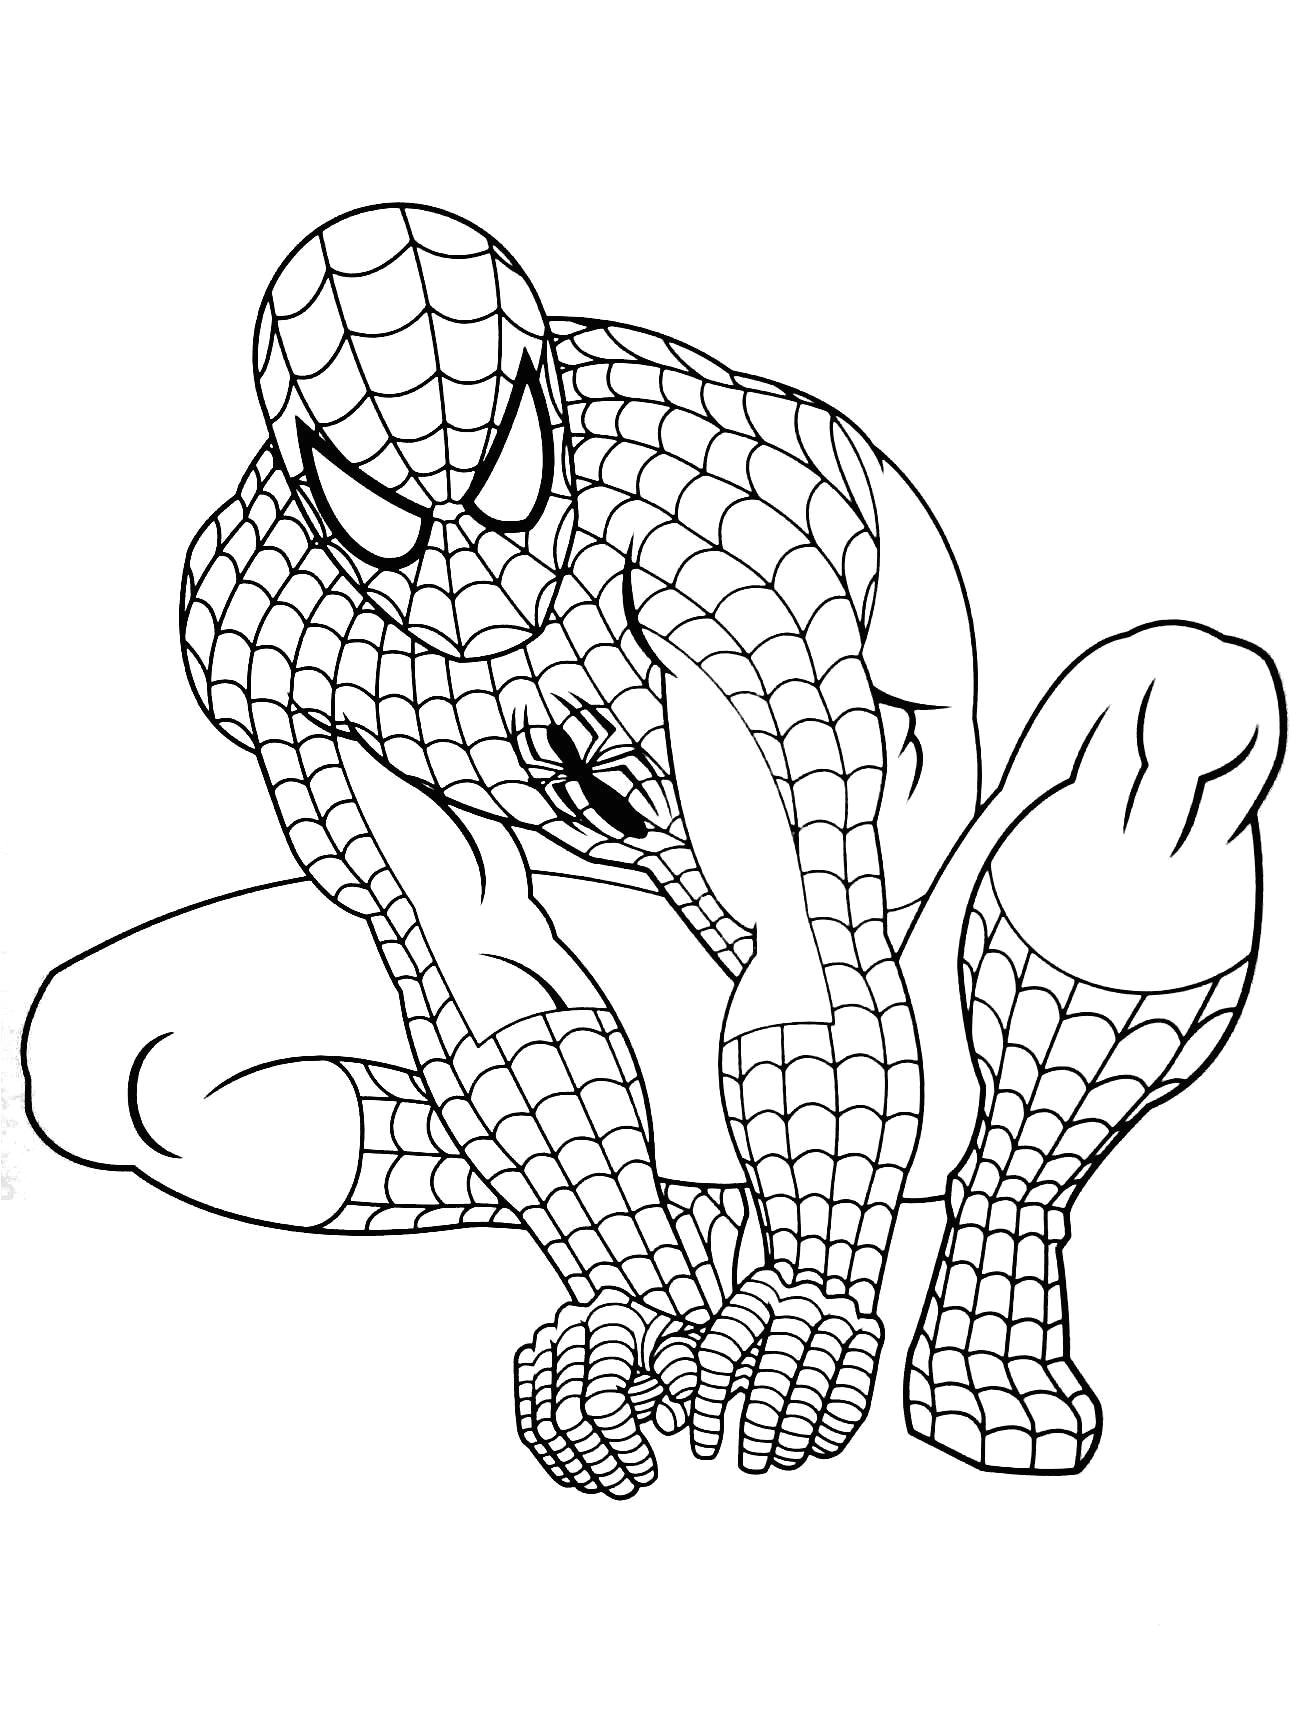 Coloriage Gratuit Spiderman à Imprimer Coloriage Spider Man Filename Coloring Page Ubiquitytheatre